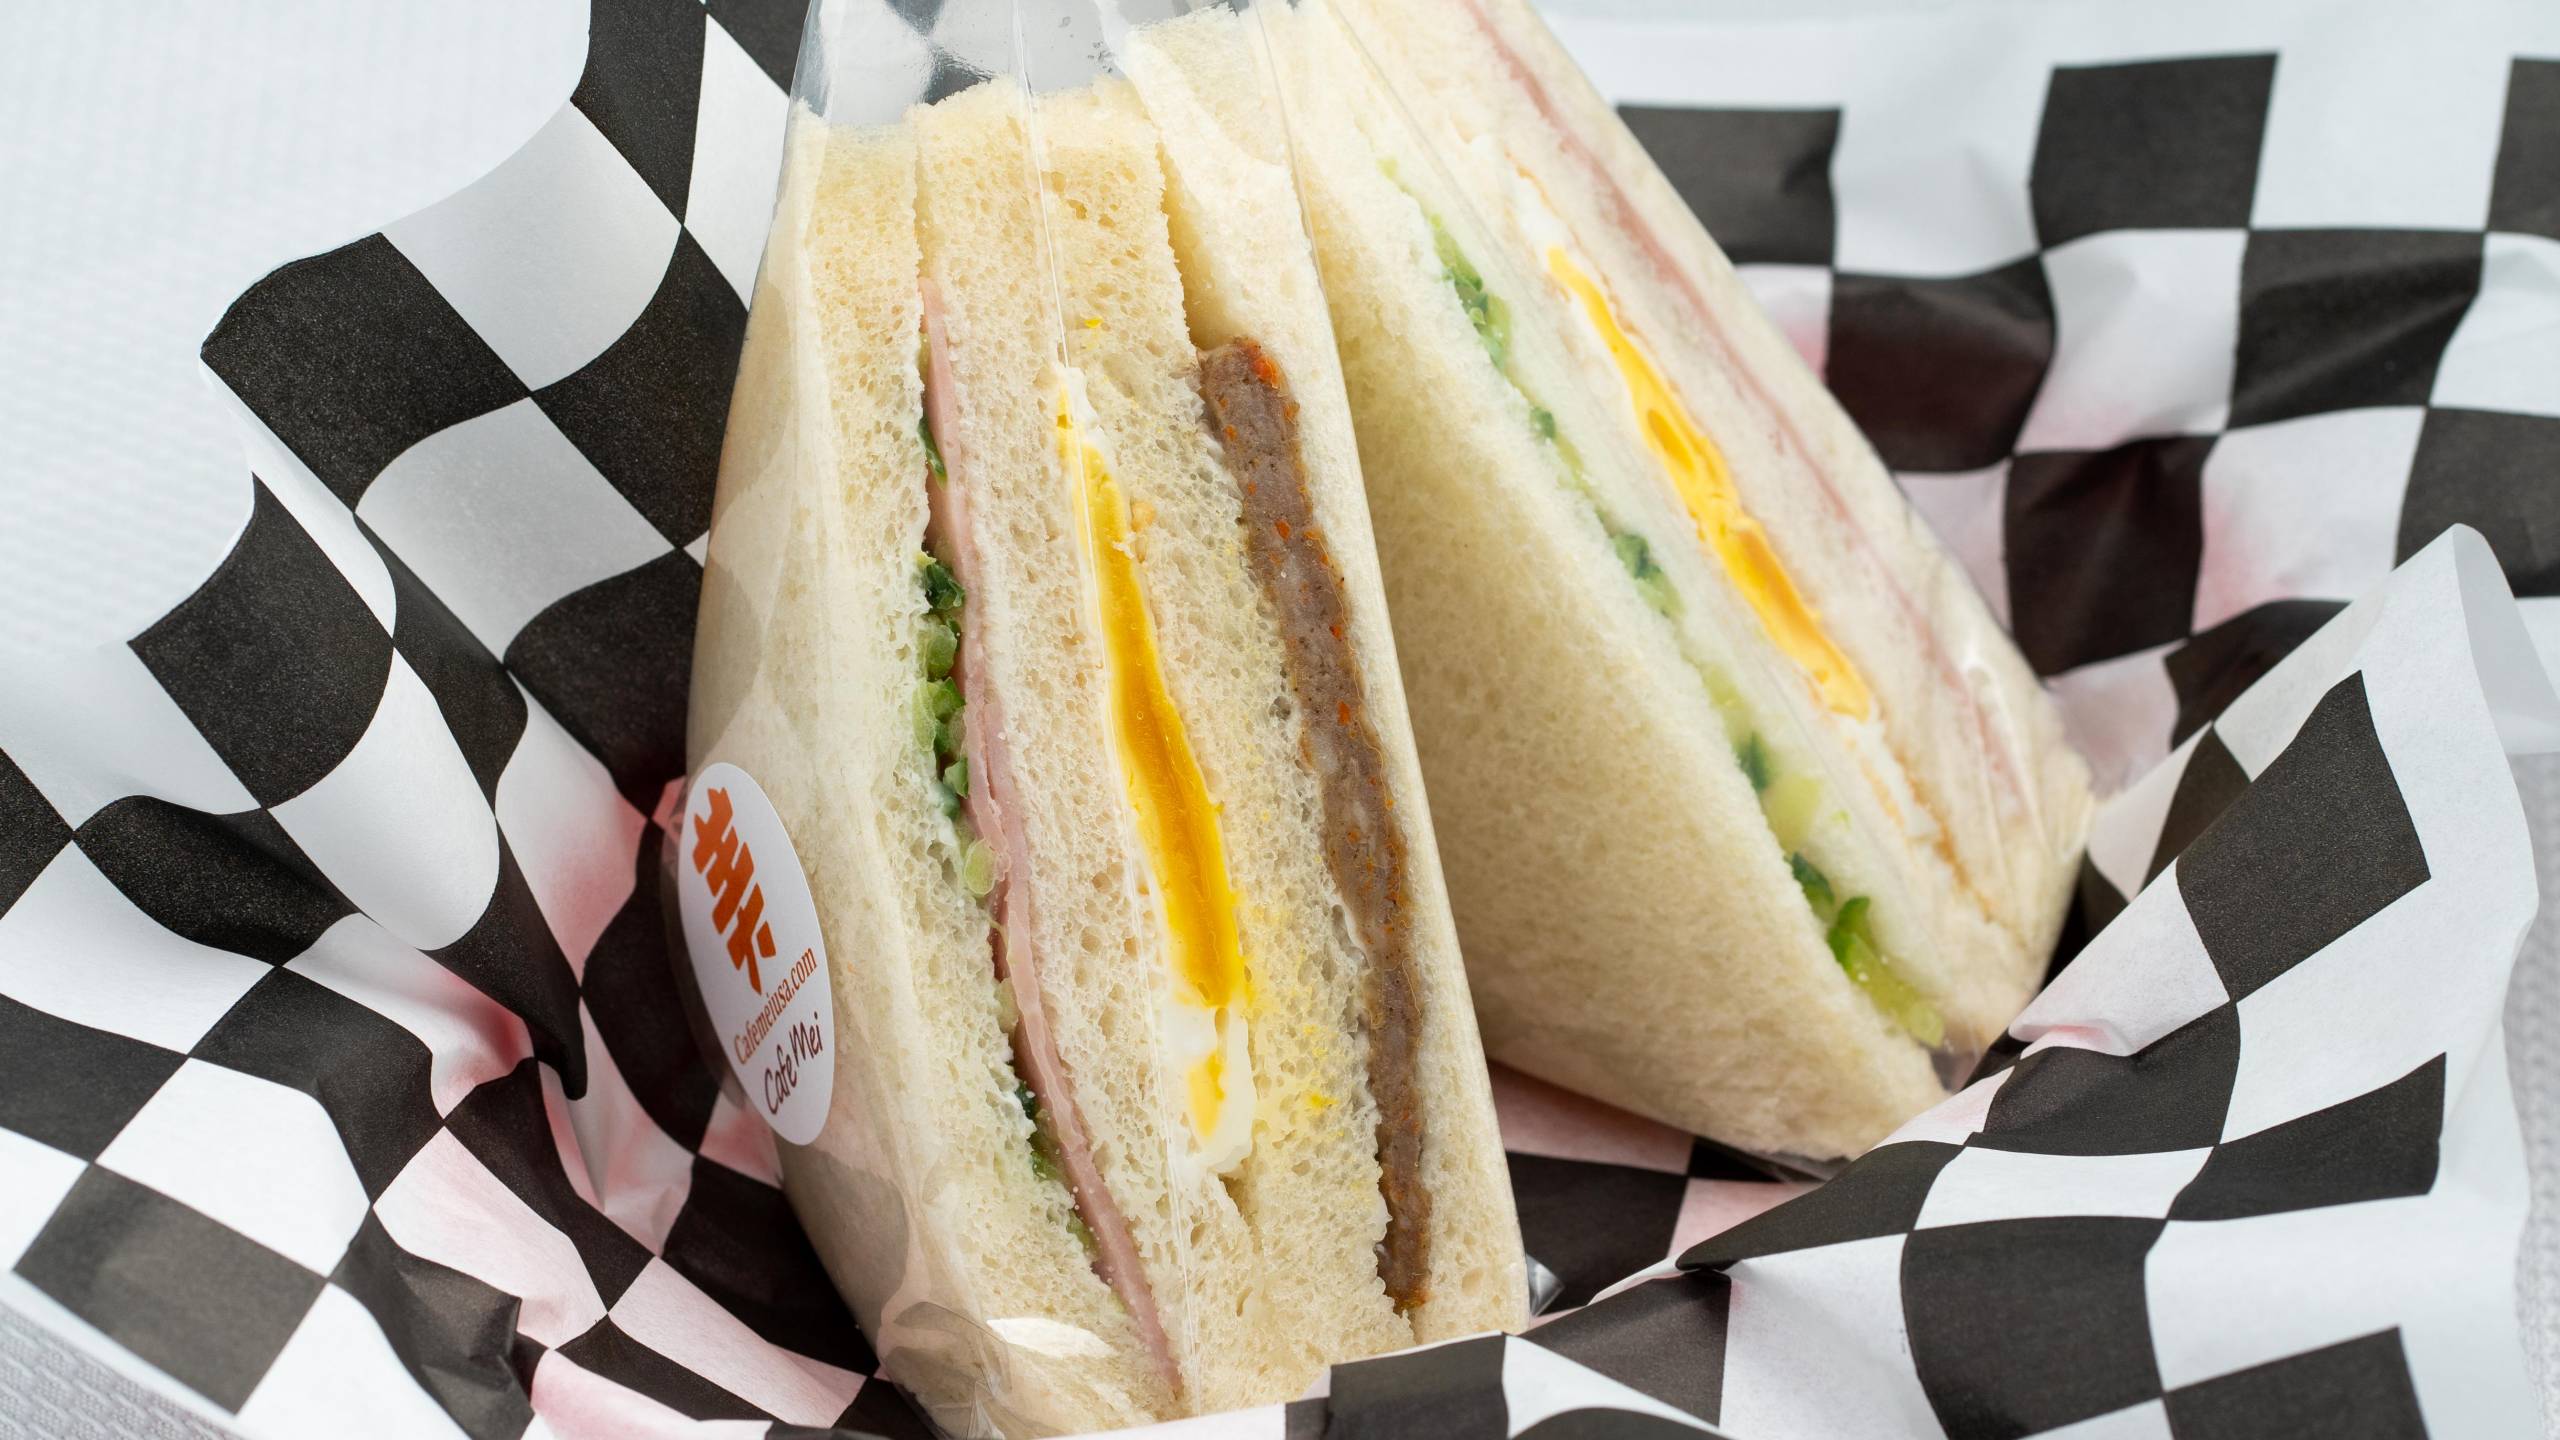 A Taiwanese breakfast sandwich wrapped in plastic.